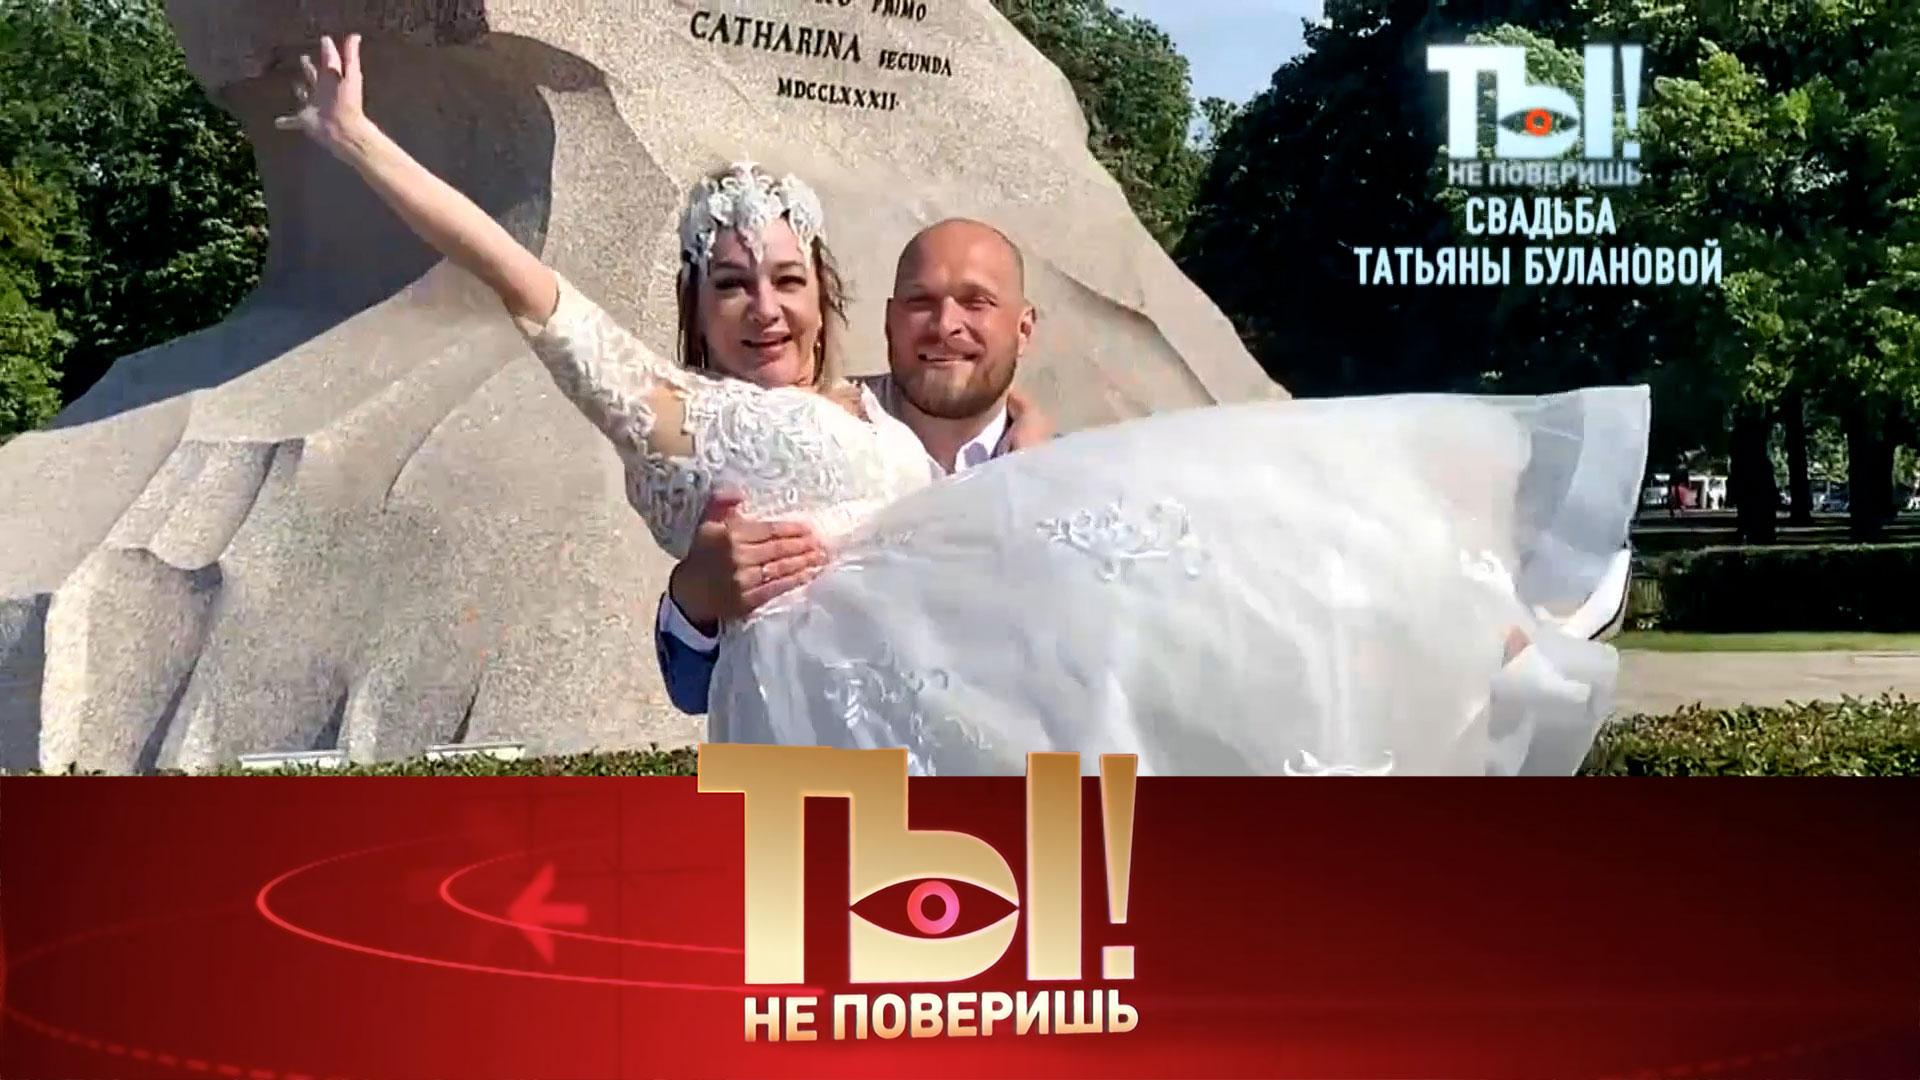 Эксклюзивные кадры со свадьбы Татьяны Булановой и юбилей Наташи Королёвой | «Ты не поверишь!»